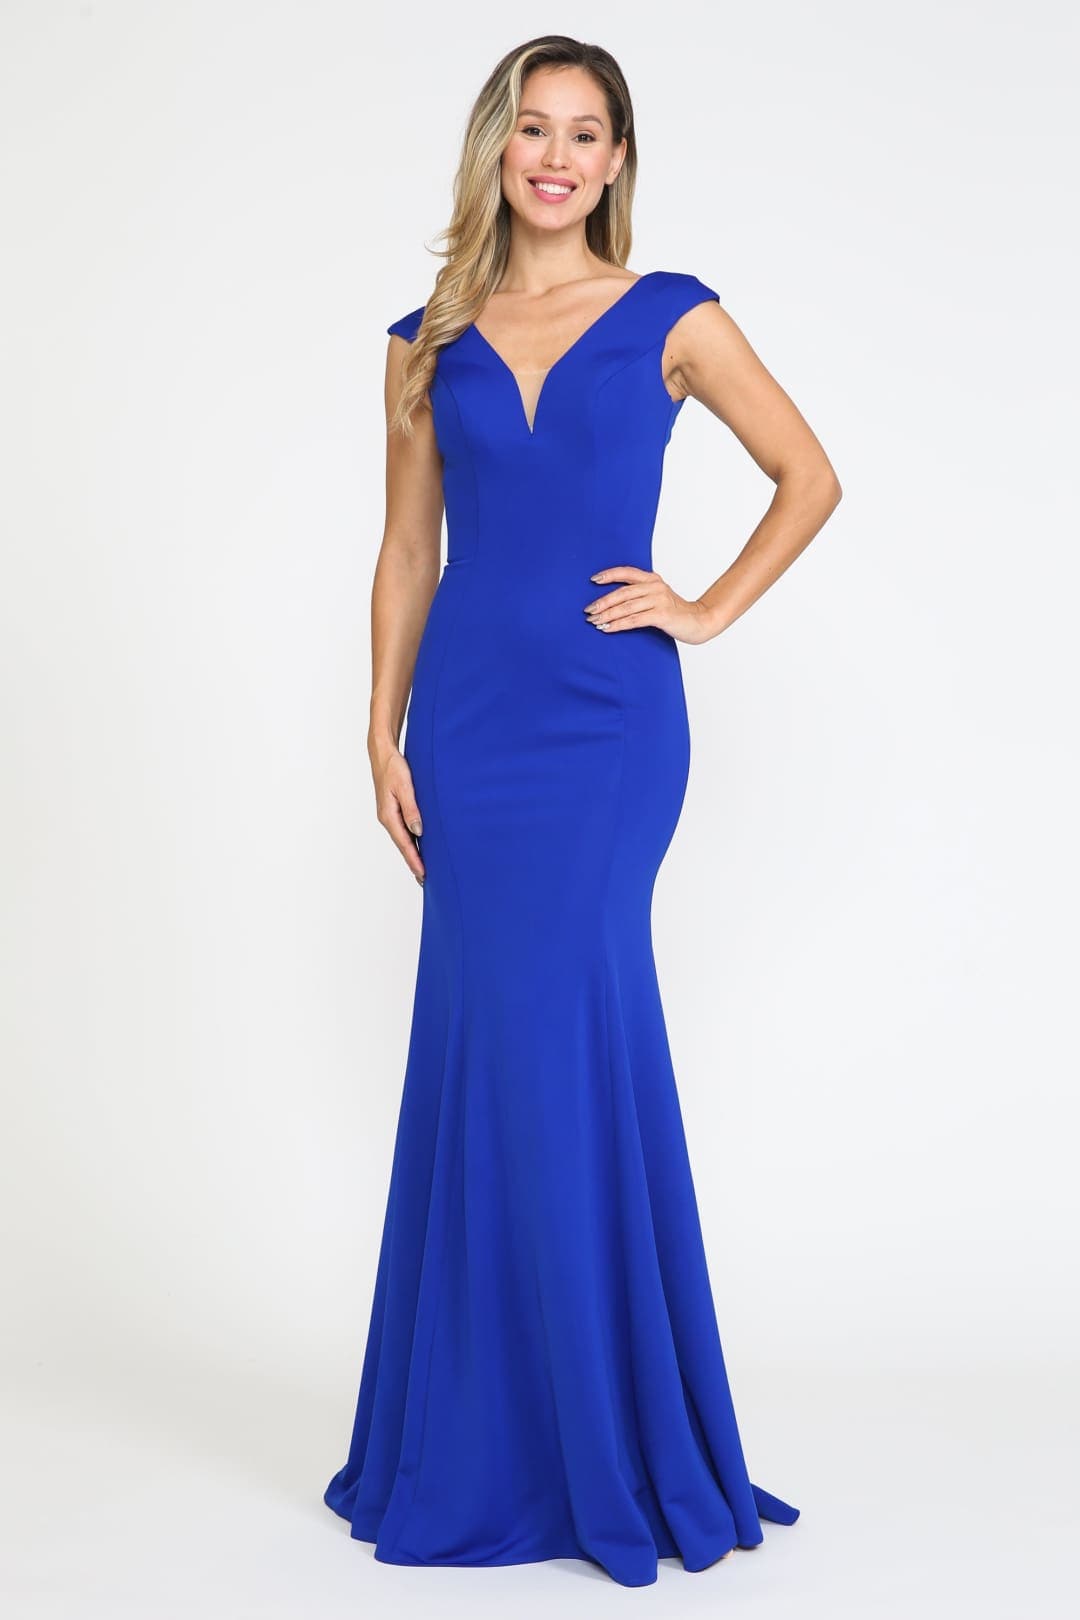 V-neckline Formal Evening Gown - ROYAL BLUE / XS